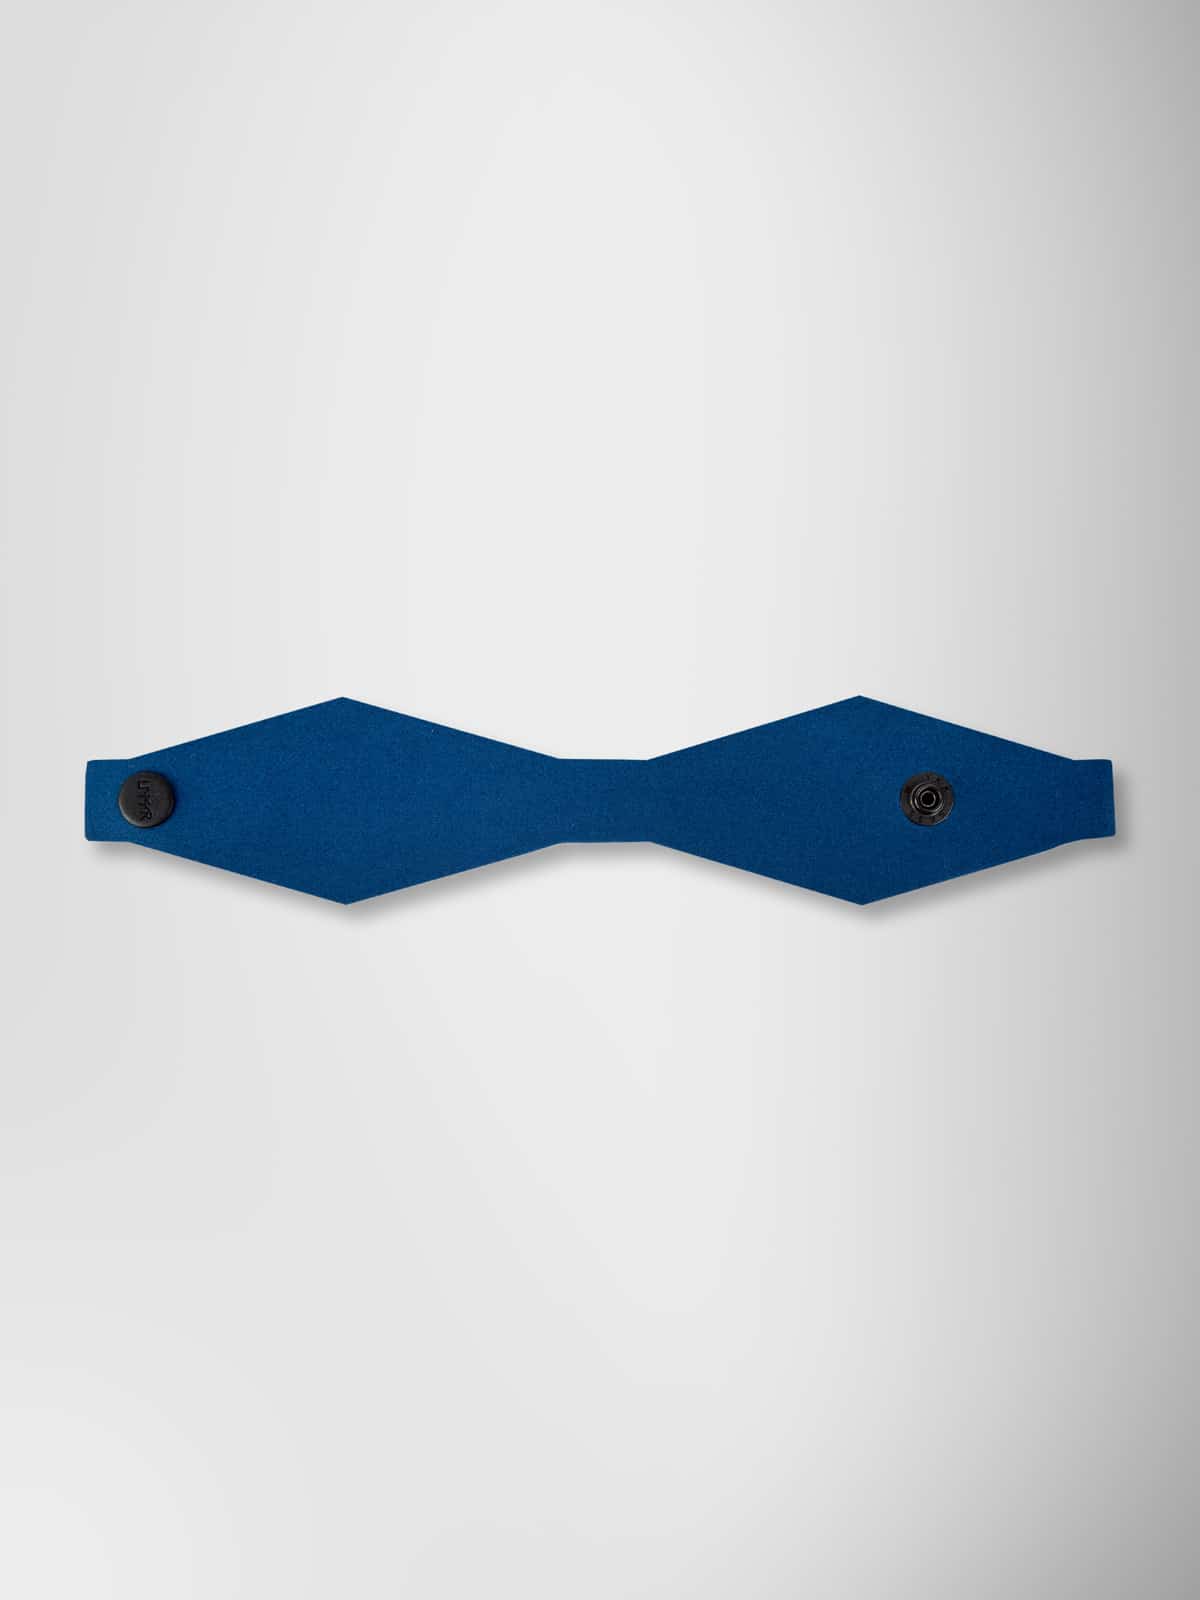 Bracelet "EvaBracelet" in Blue